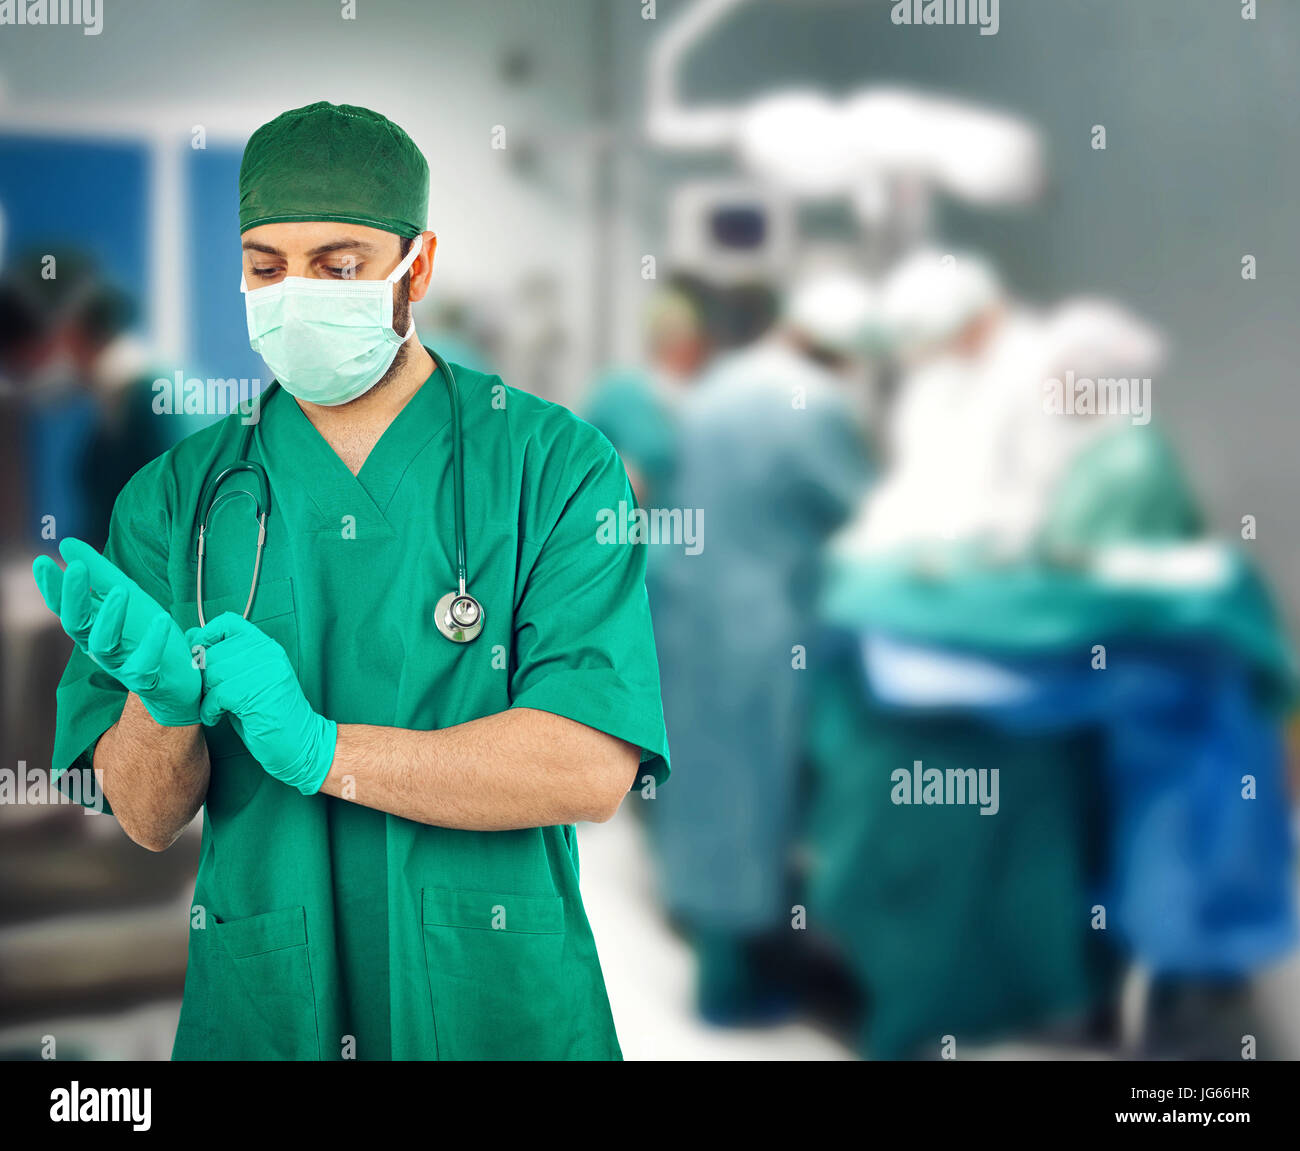 Chirurgien portant des gants dans la salle d'opération Banque D'Images